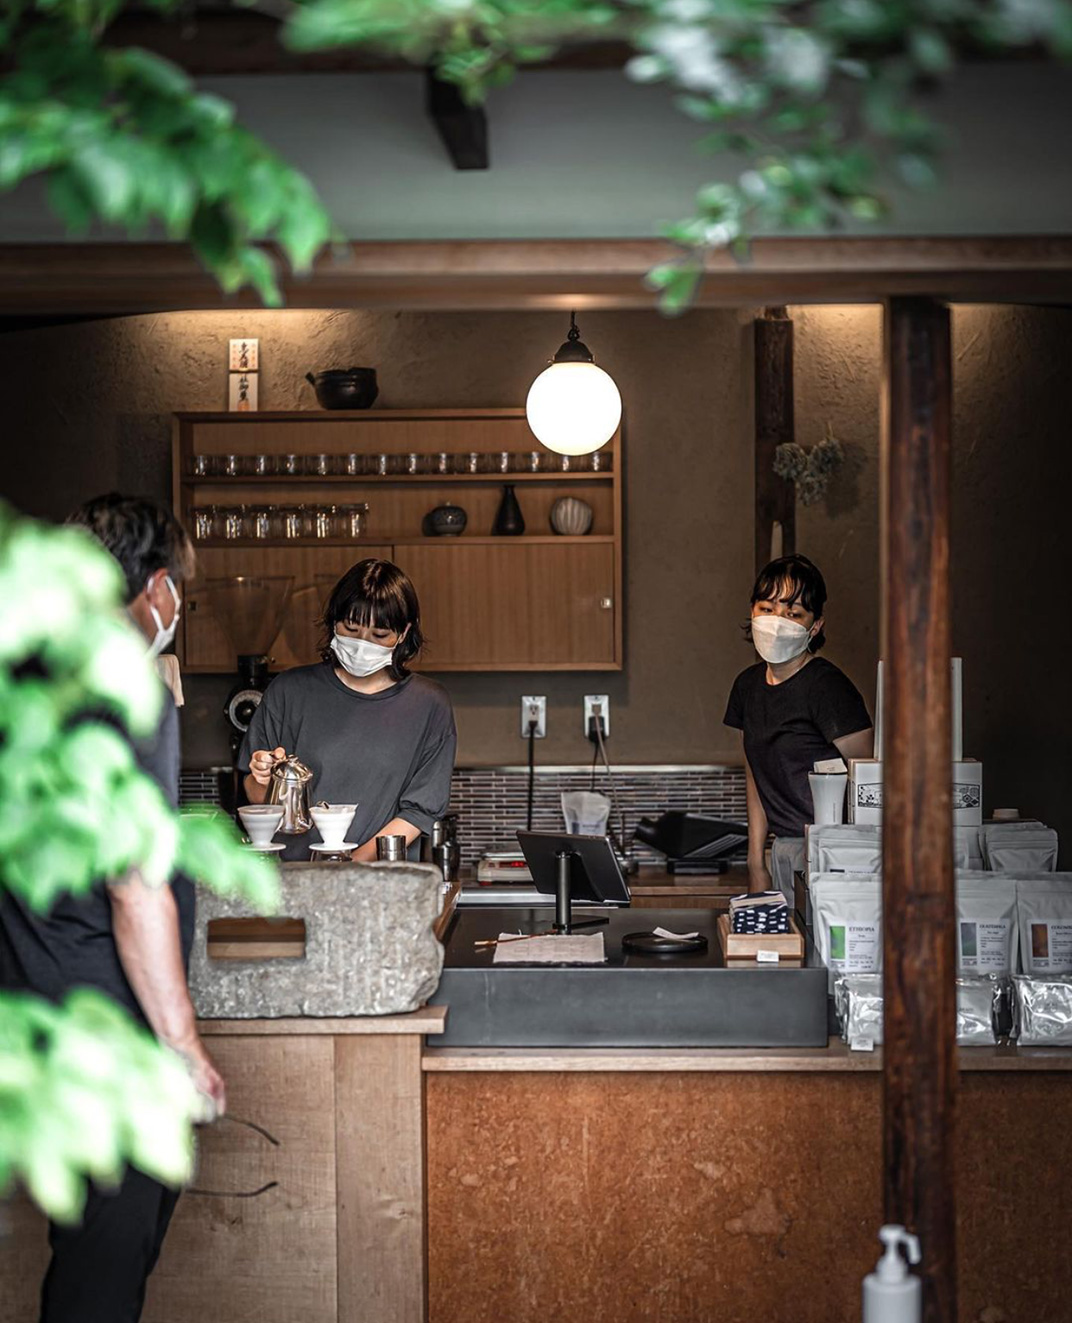 周末咖啡烘焙工坊 日本 东京 西安 面包店 烘培 咖啡店 木色 logo设计 vi设计 空间设计